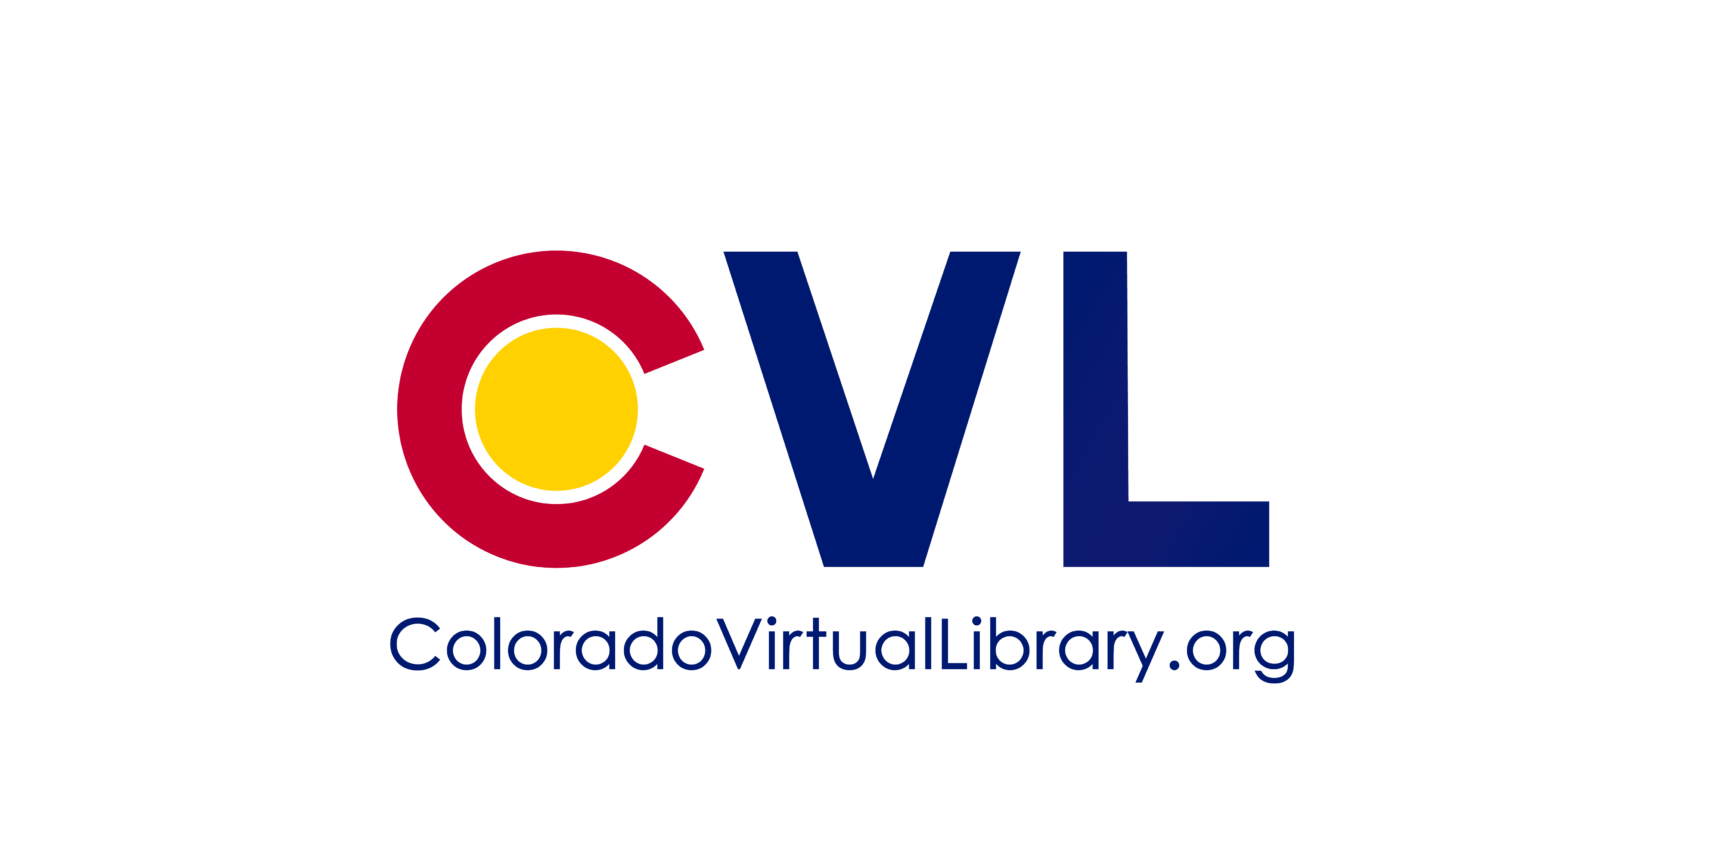 Colorado Virtual Library Logo